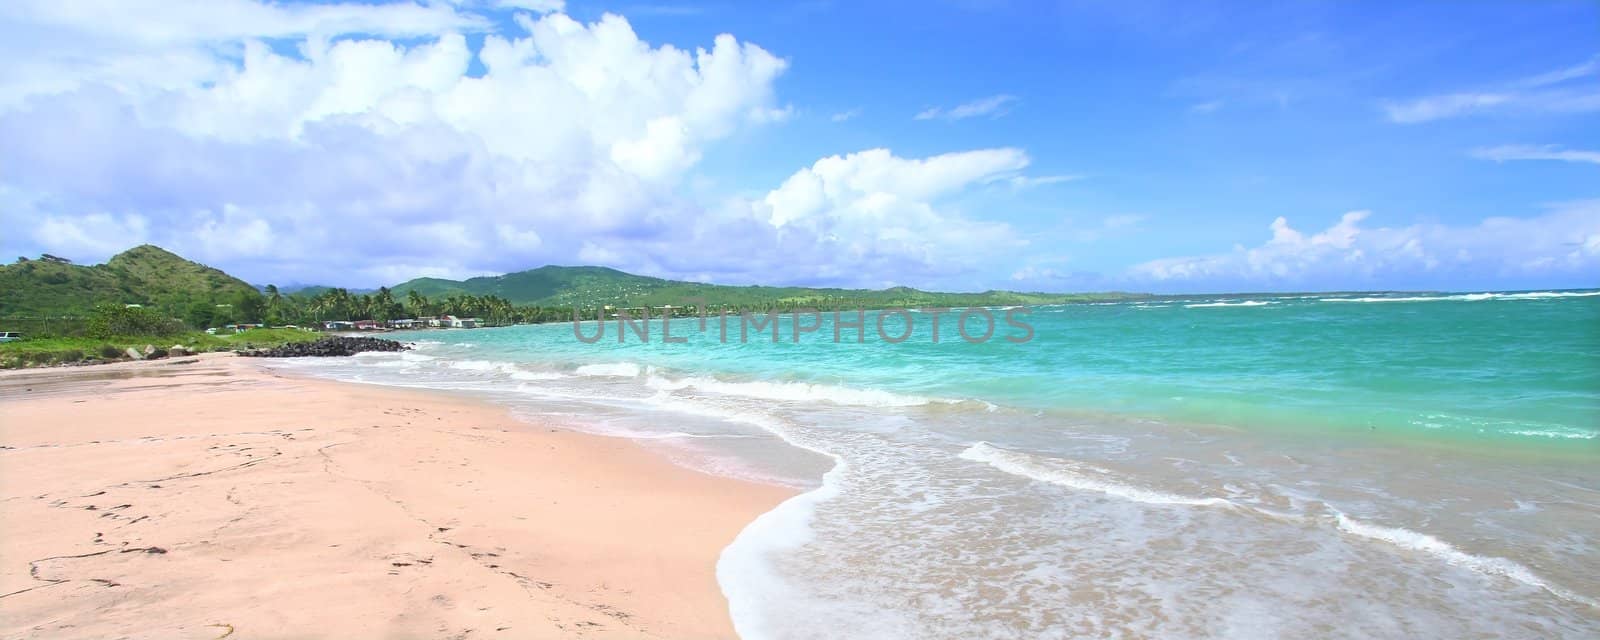 Anse de Sables Beach - Saint Lucia by Wirepec